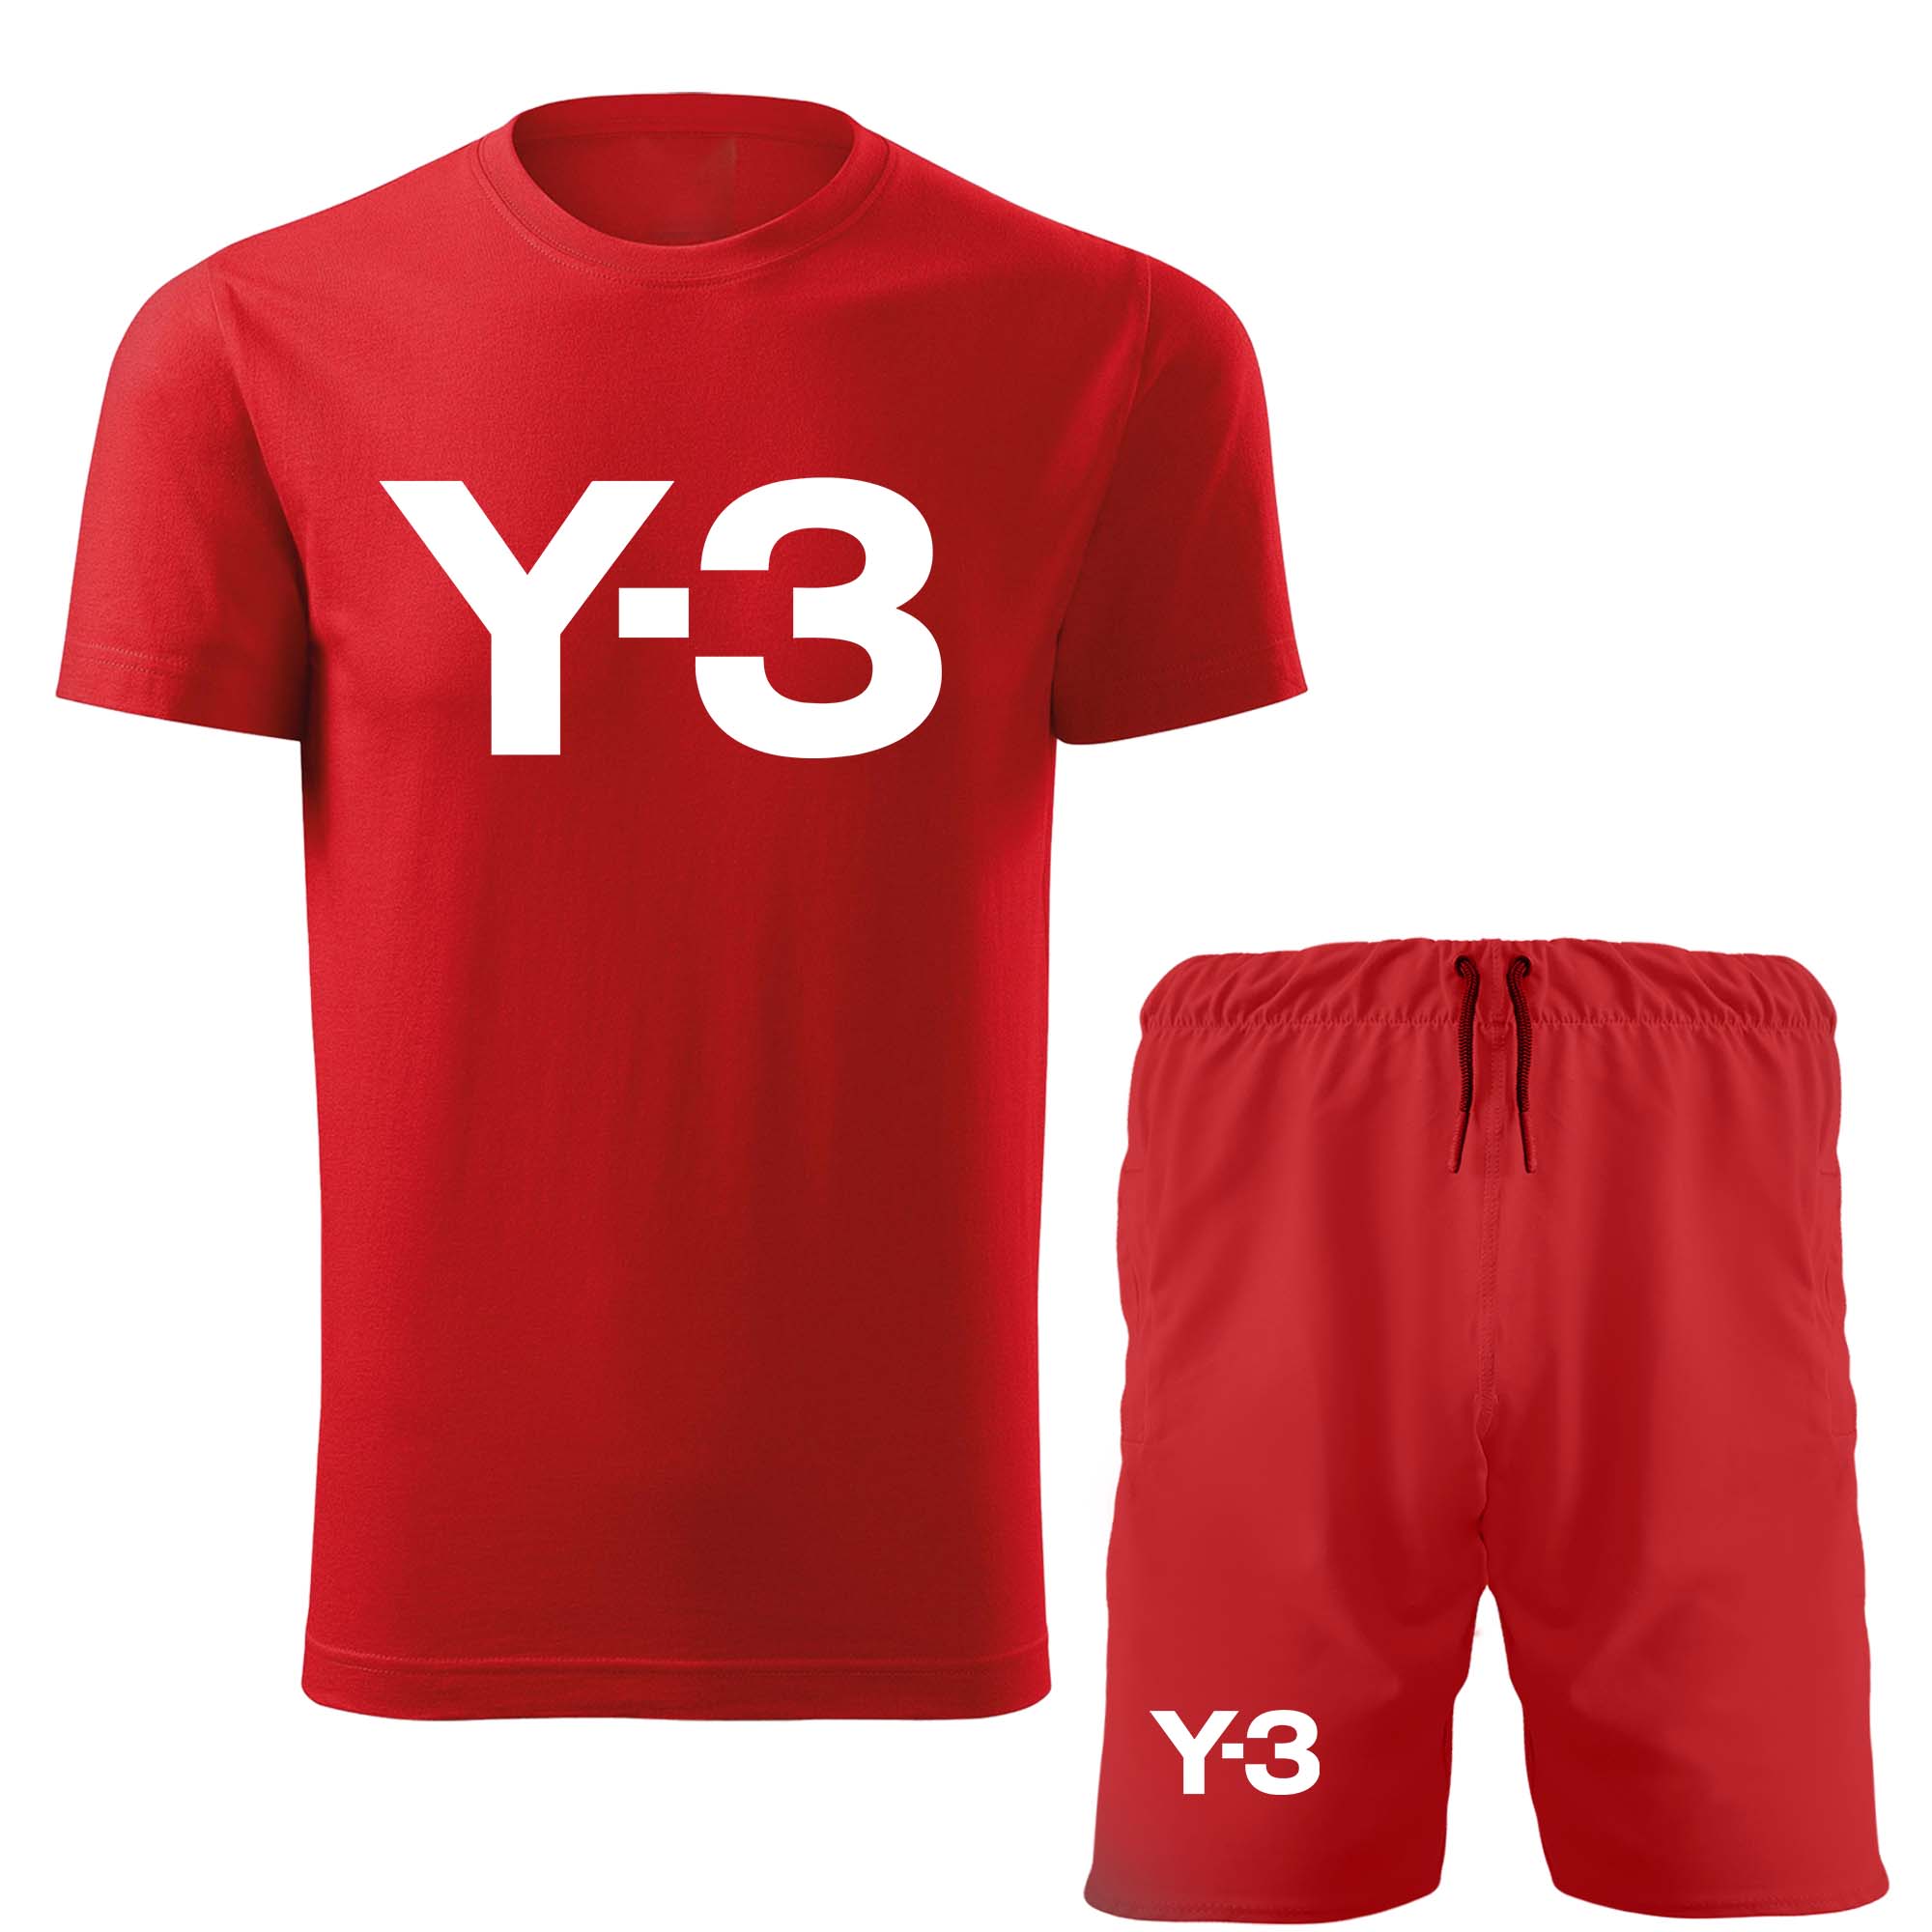 ست تی شرت آستین کوتاه و شلوارک مردانه مدل 14010719 رنگ قرمز